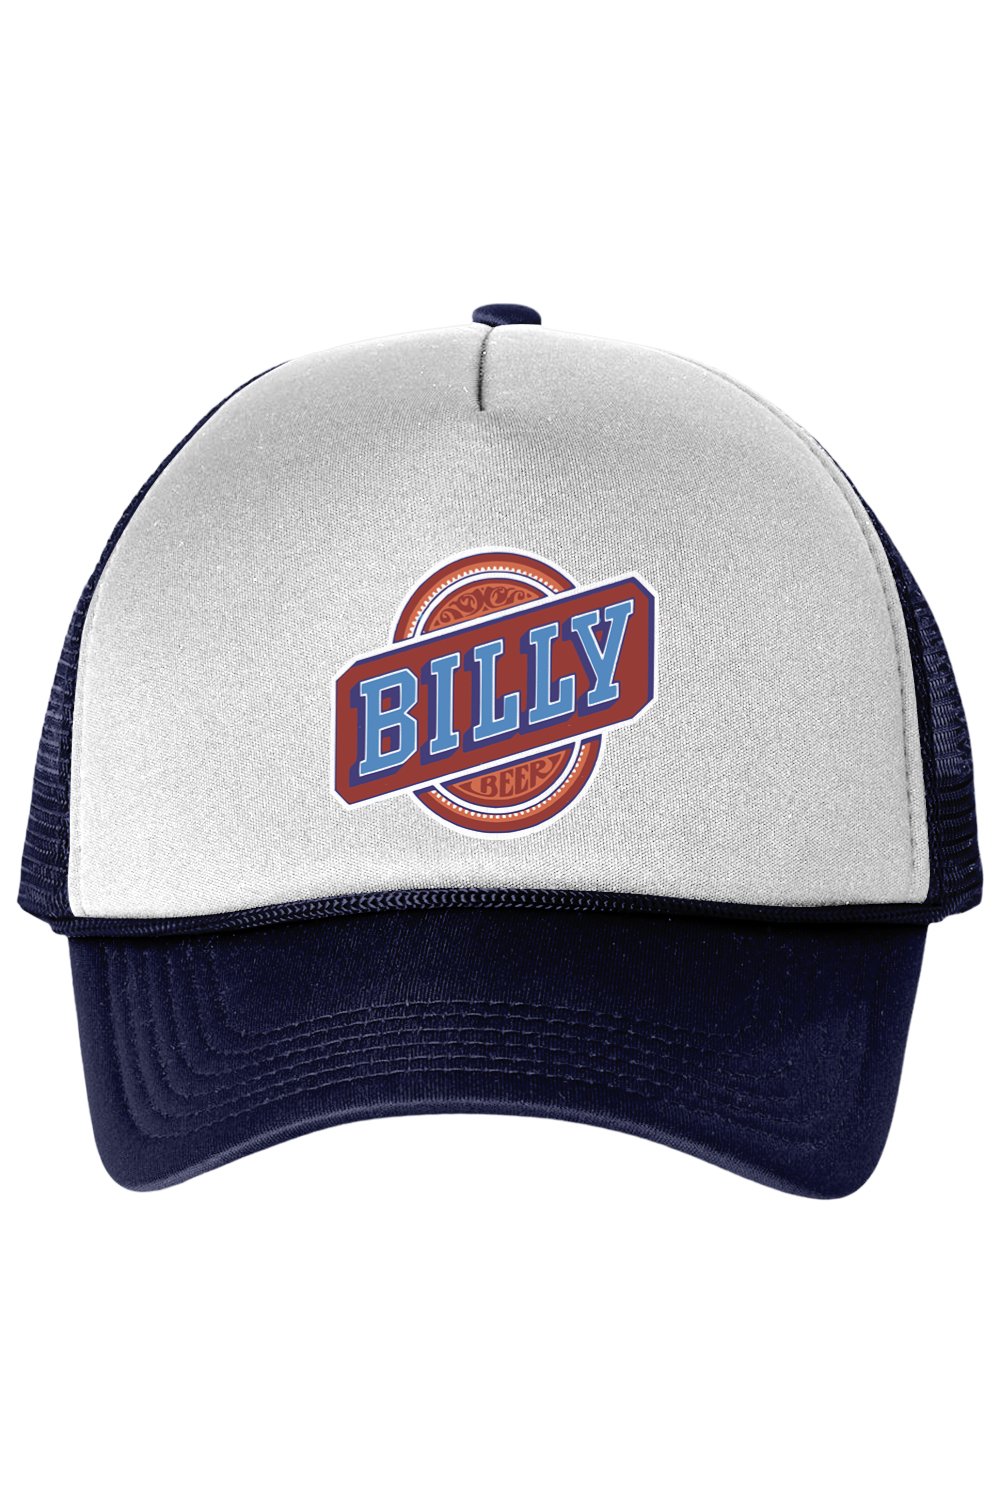 Billy Beer - Trucker Cap - Yinzylvania